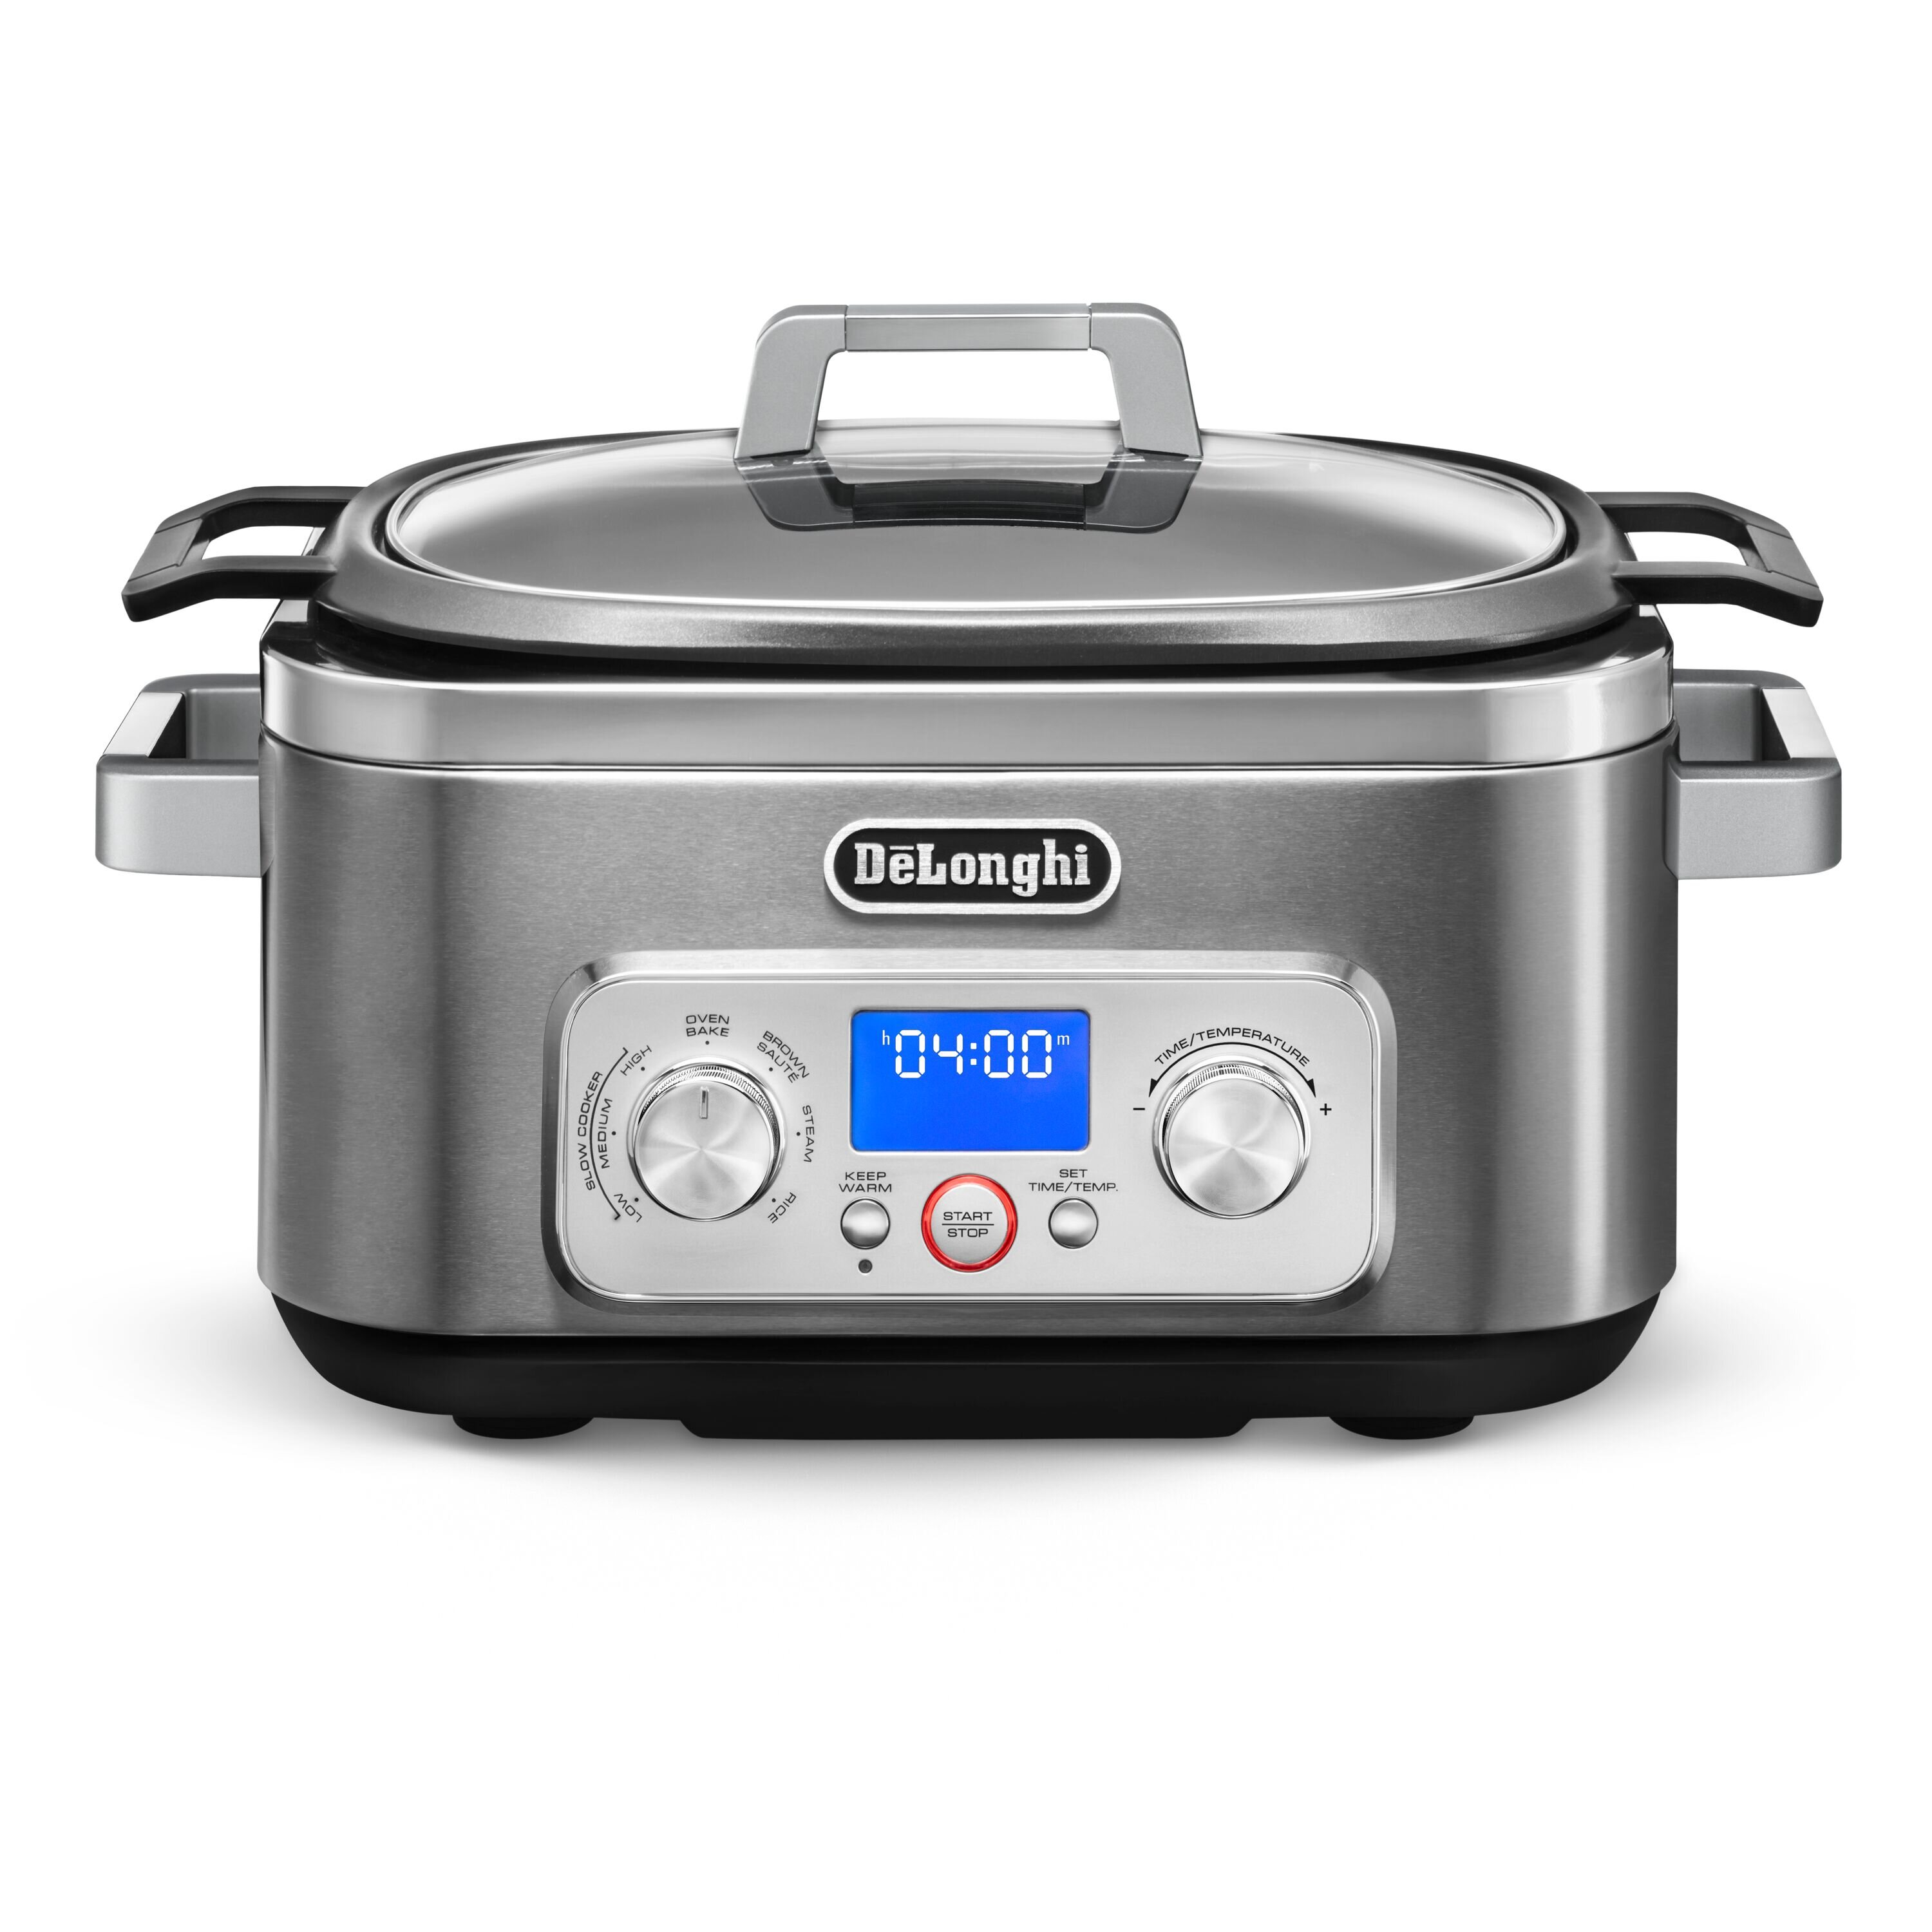 https://assets.wfcdn.com/im/77054060/compr-r85/1941/194155342/delonghi-livenza-multi-cooker-stainless-steel-6-qt-crock-pot-slow-cooker.jpg